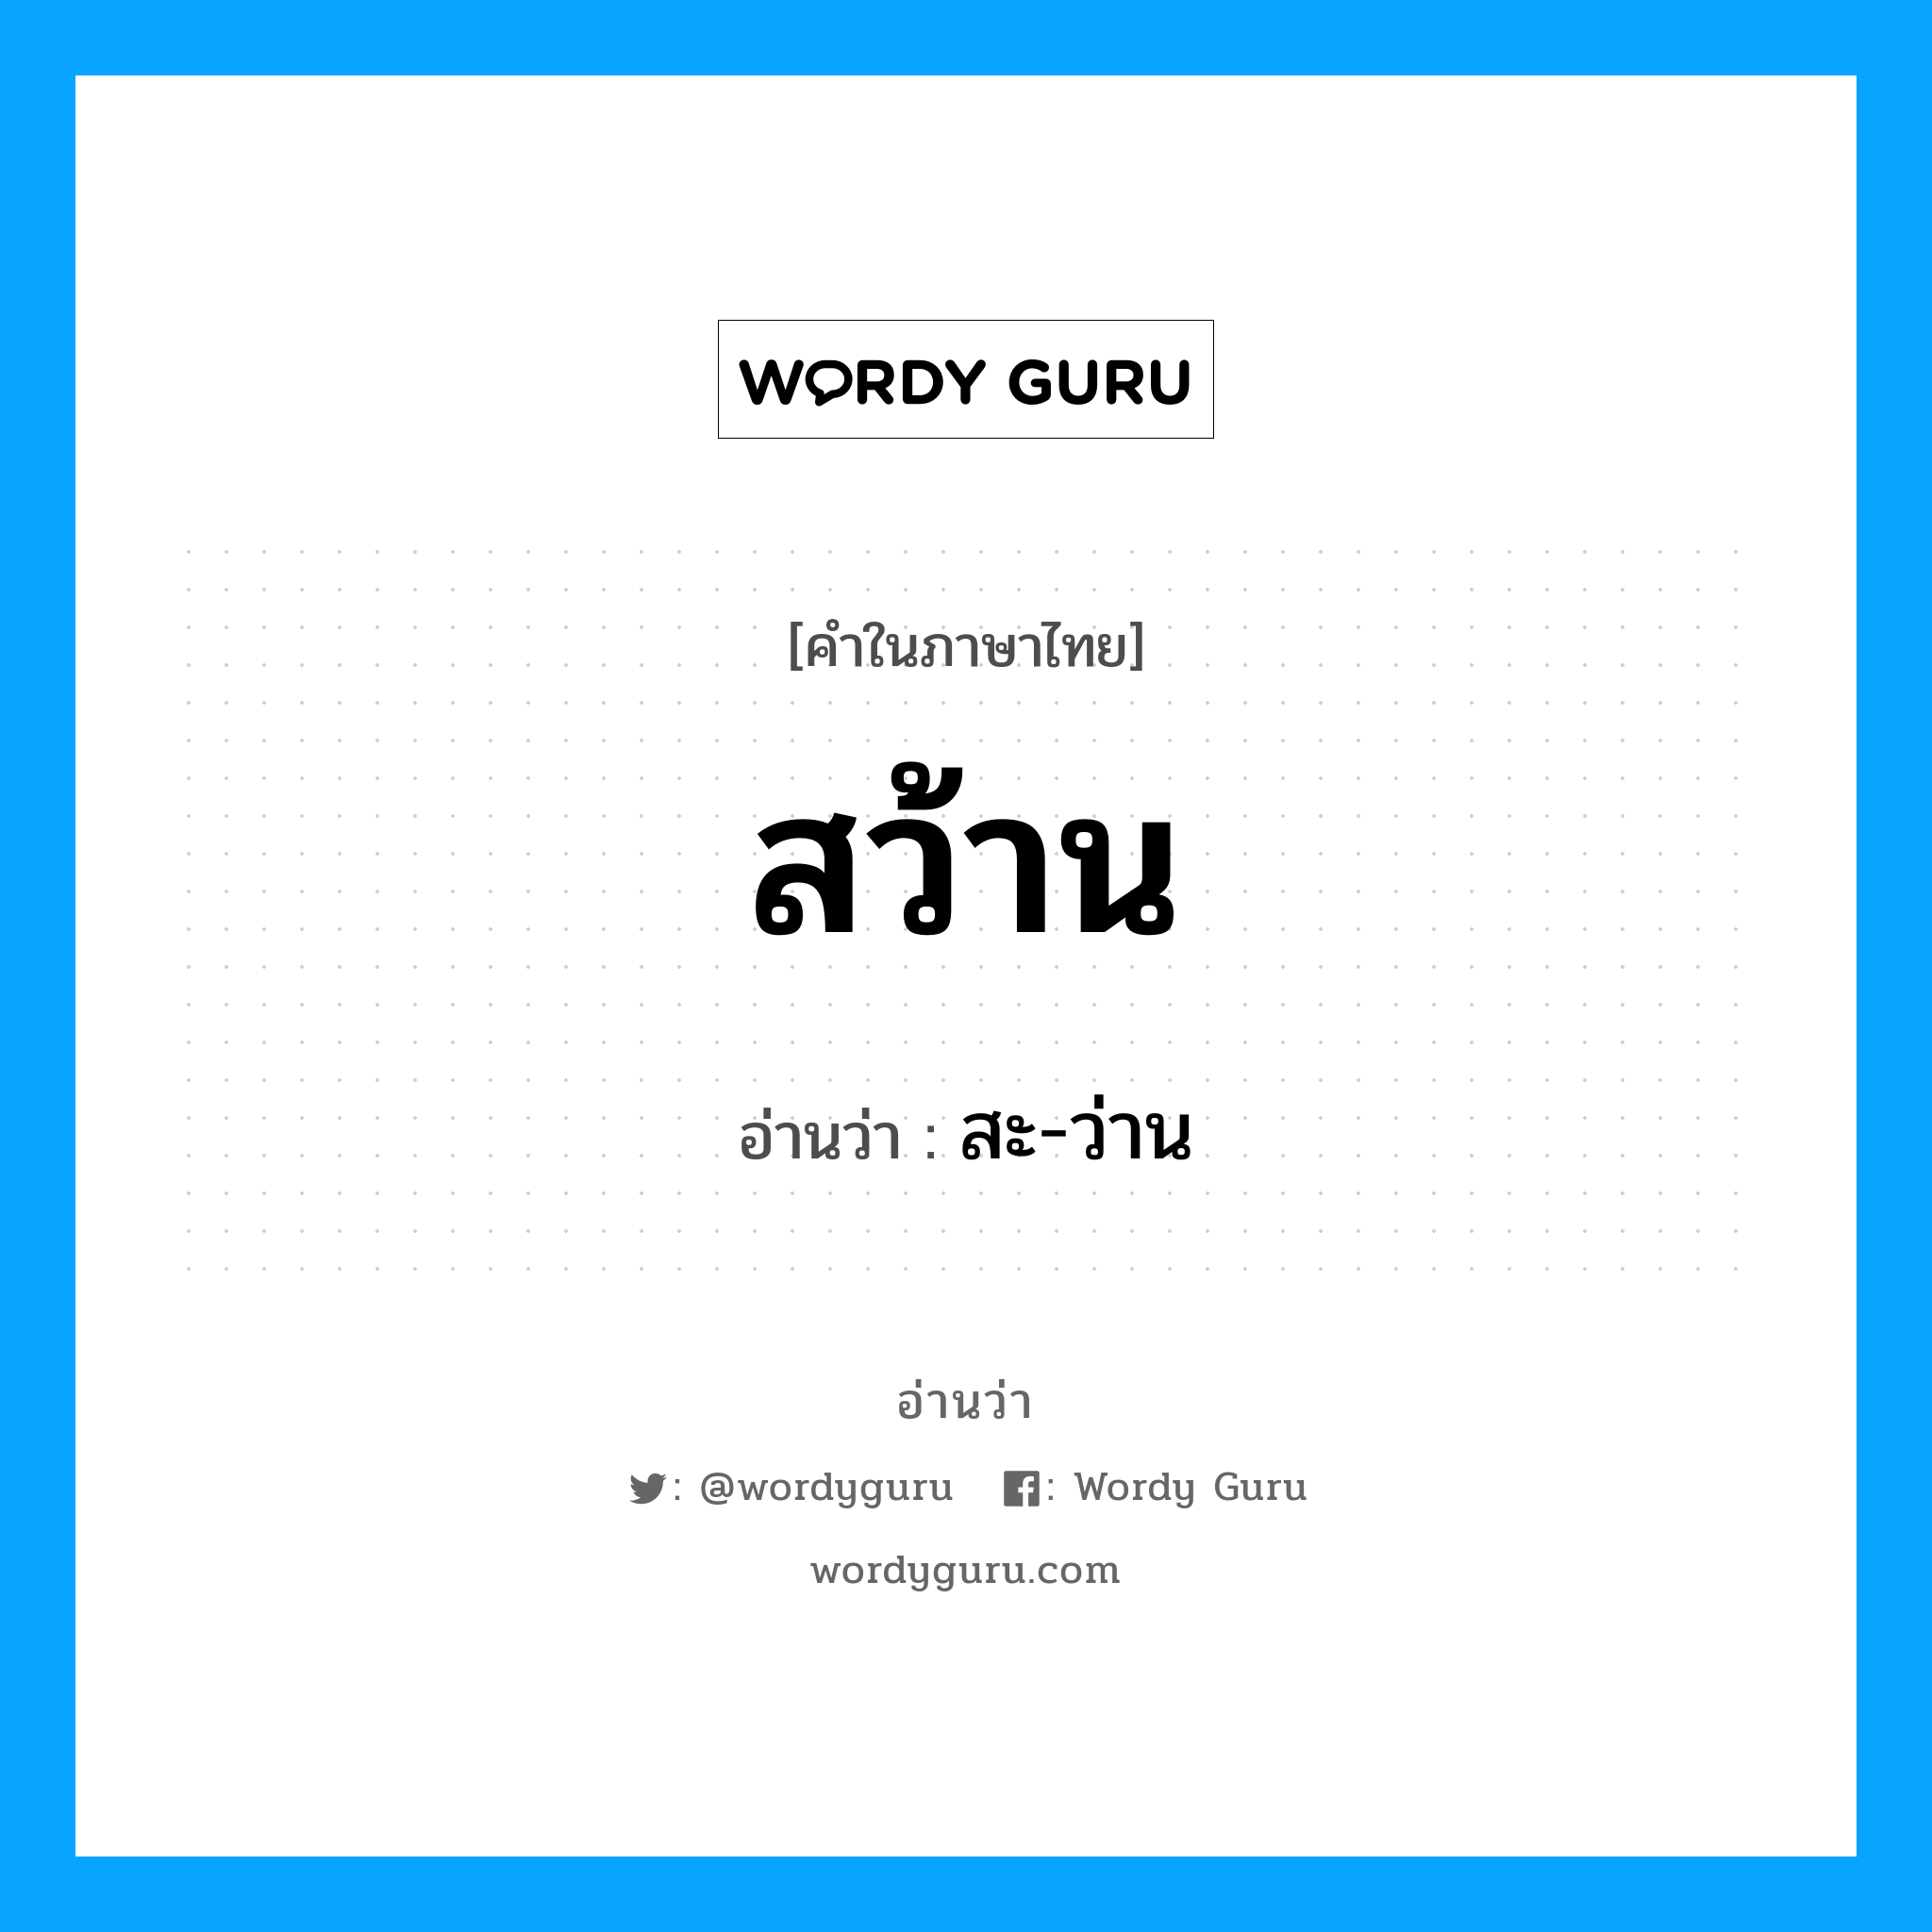 สะ-ว่าน เป็นคำอ่านของคำไหน?, คำในภาษาไทย สะ-ว่าน อ่านว่า สว้าน